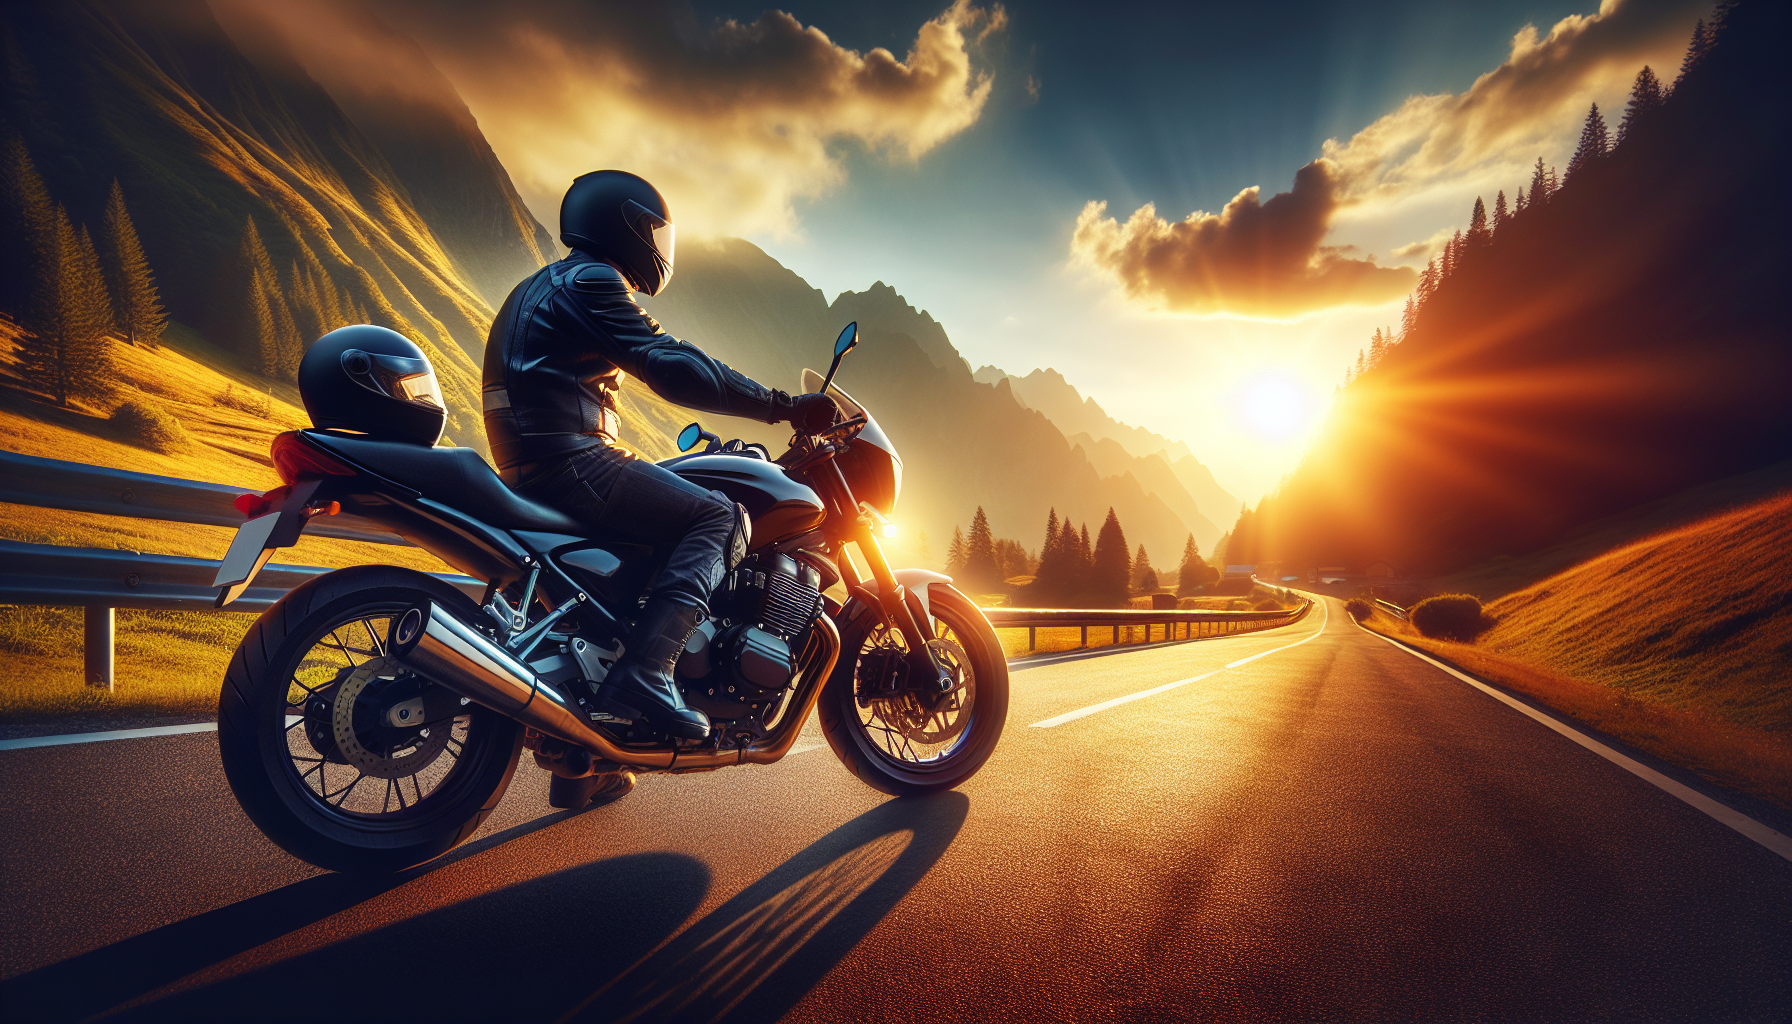 découvrez l'importance de souscrire une assurance responsabilité civile pour protéger votre moto et prévenir les risques en cas d'accident.